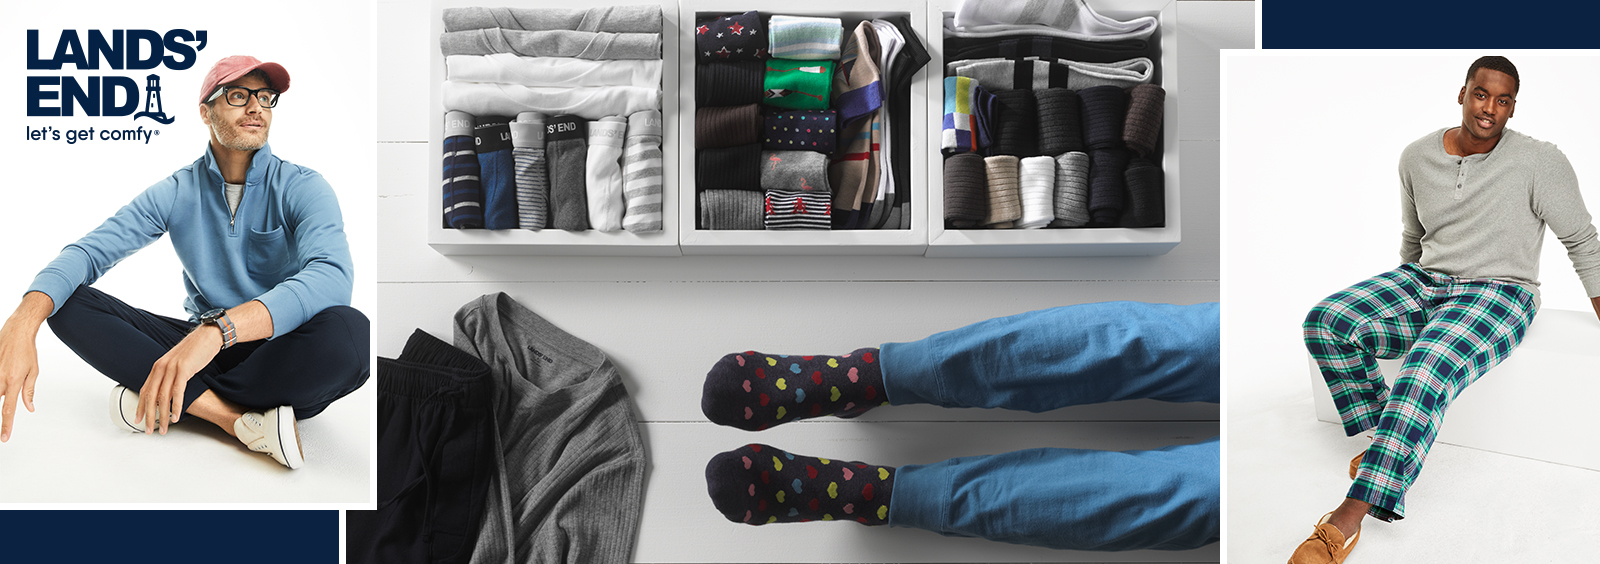 Wie Sie Loungewear für Herren für die Arbeit im Homeoffice aufpeppen können